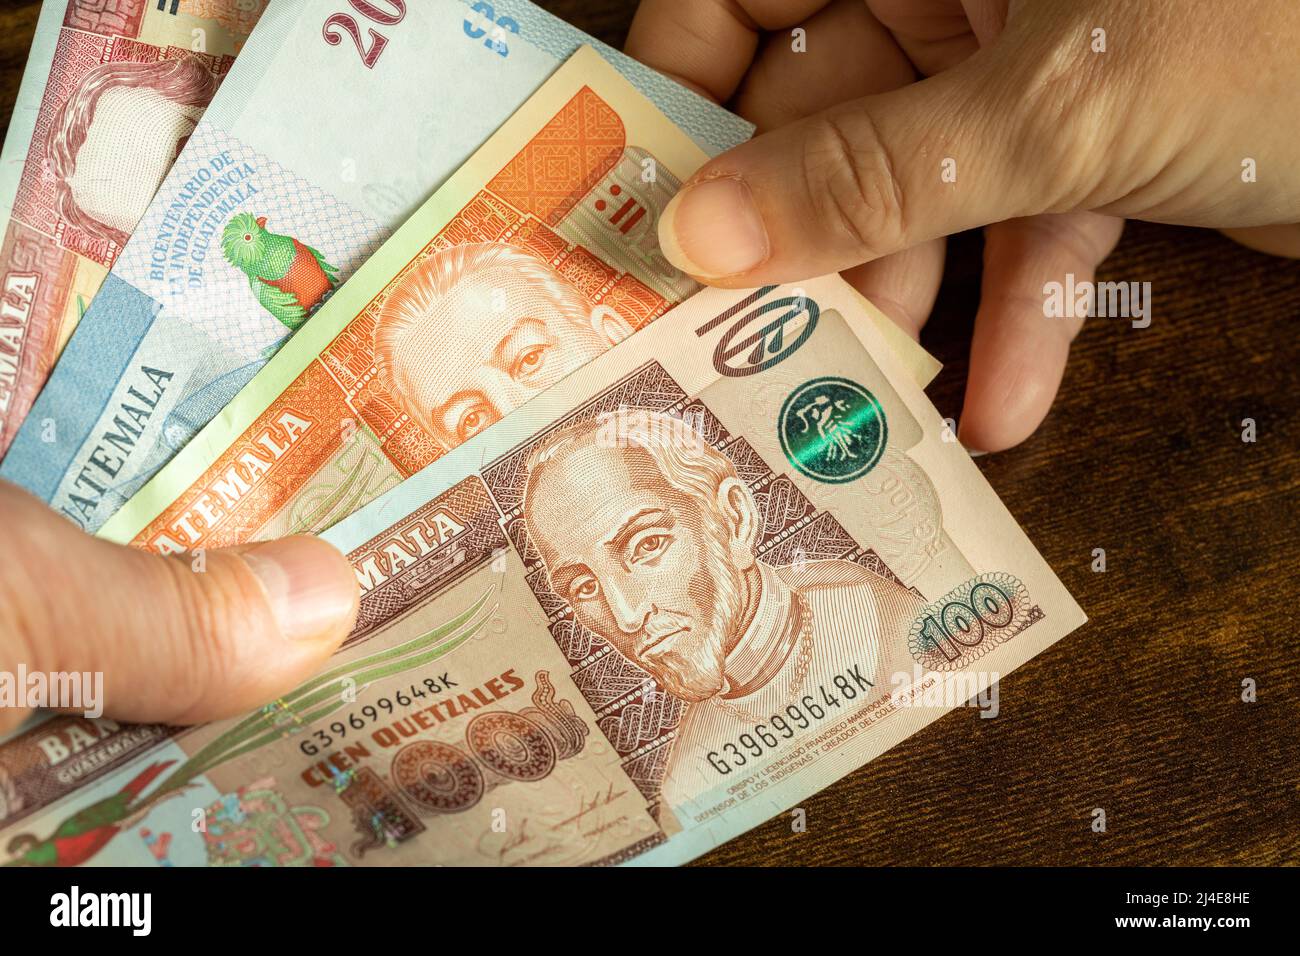 Guatemala-Geld, viele Quetzal-Banknoten wurden einer anderen Person übergeben Stockfoto